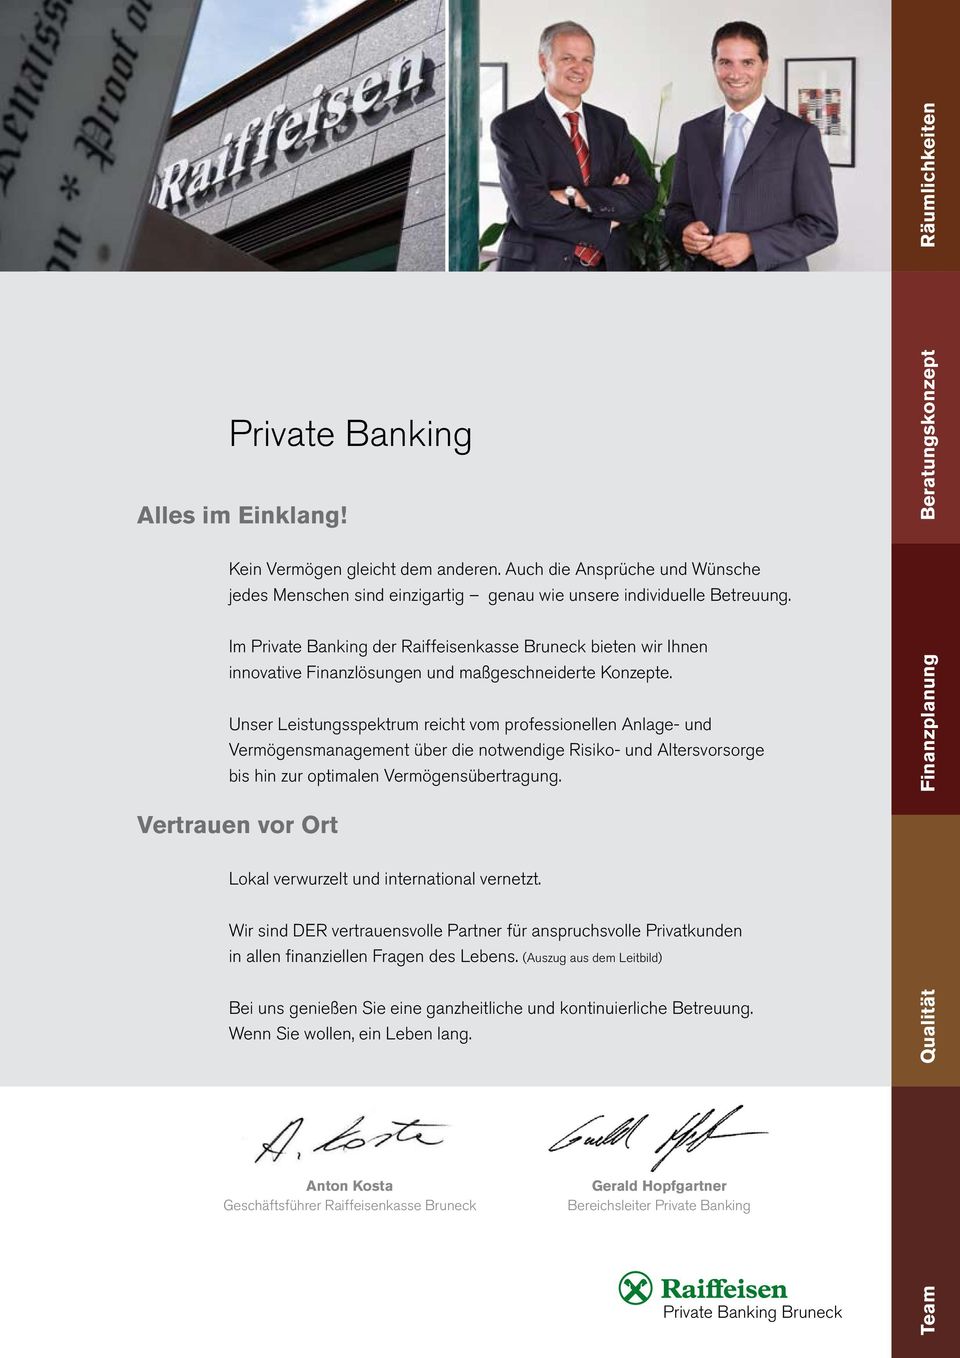 Im Private Banking der Raiffeisenkasse Bruneck bieten wir Ihnen innovative Finanzlösungen und maßgeschneiderte Konzepte.